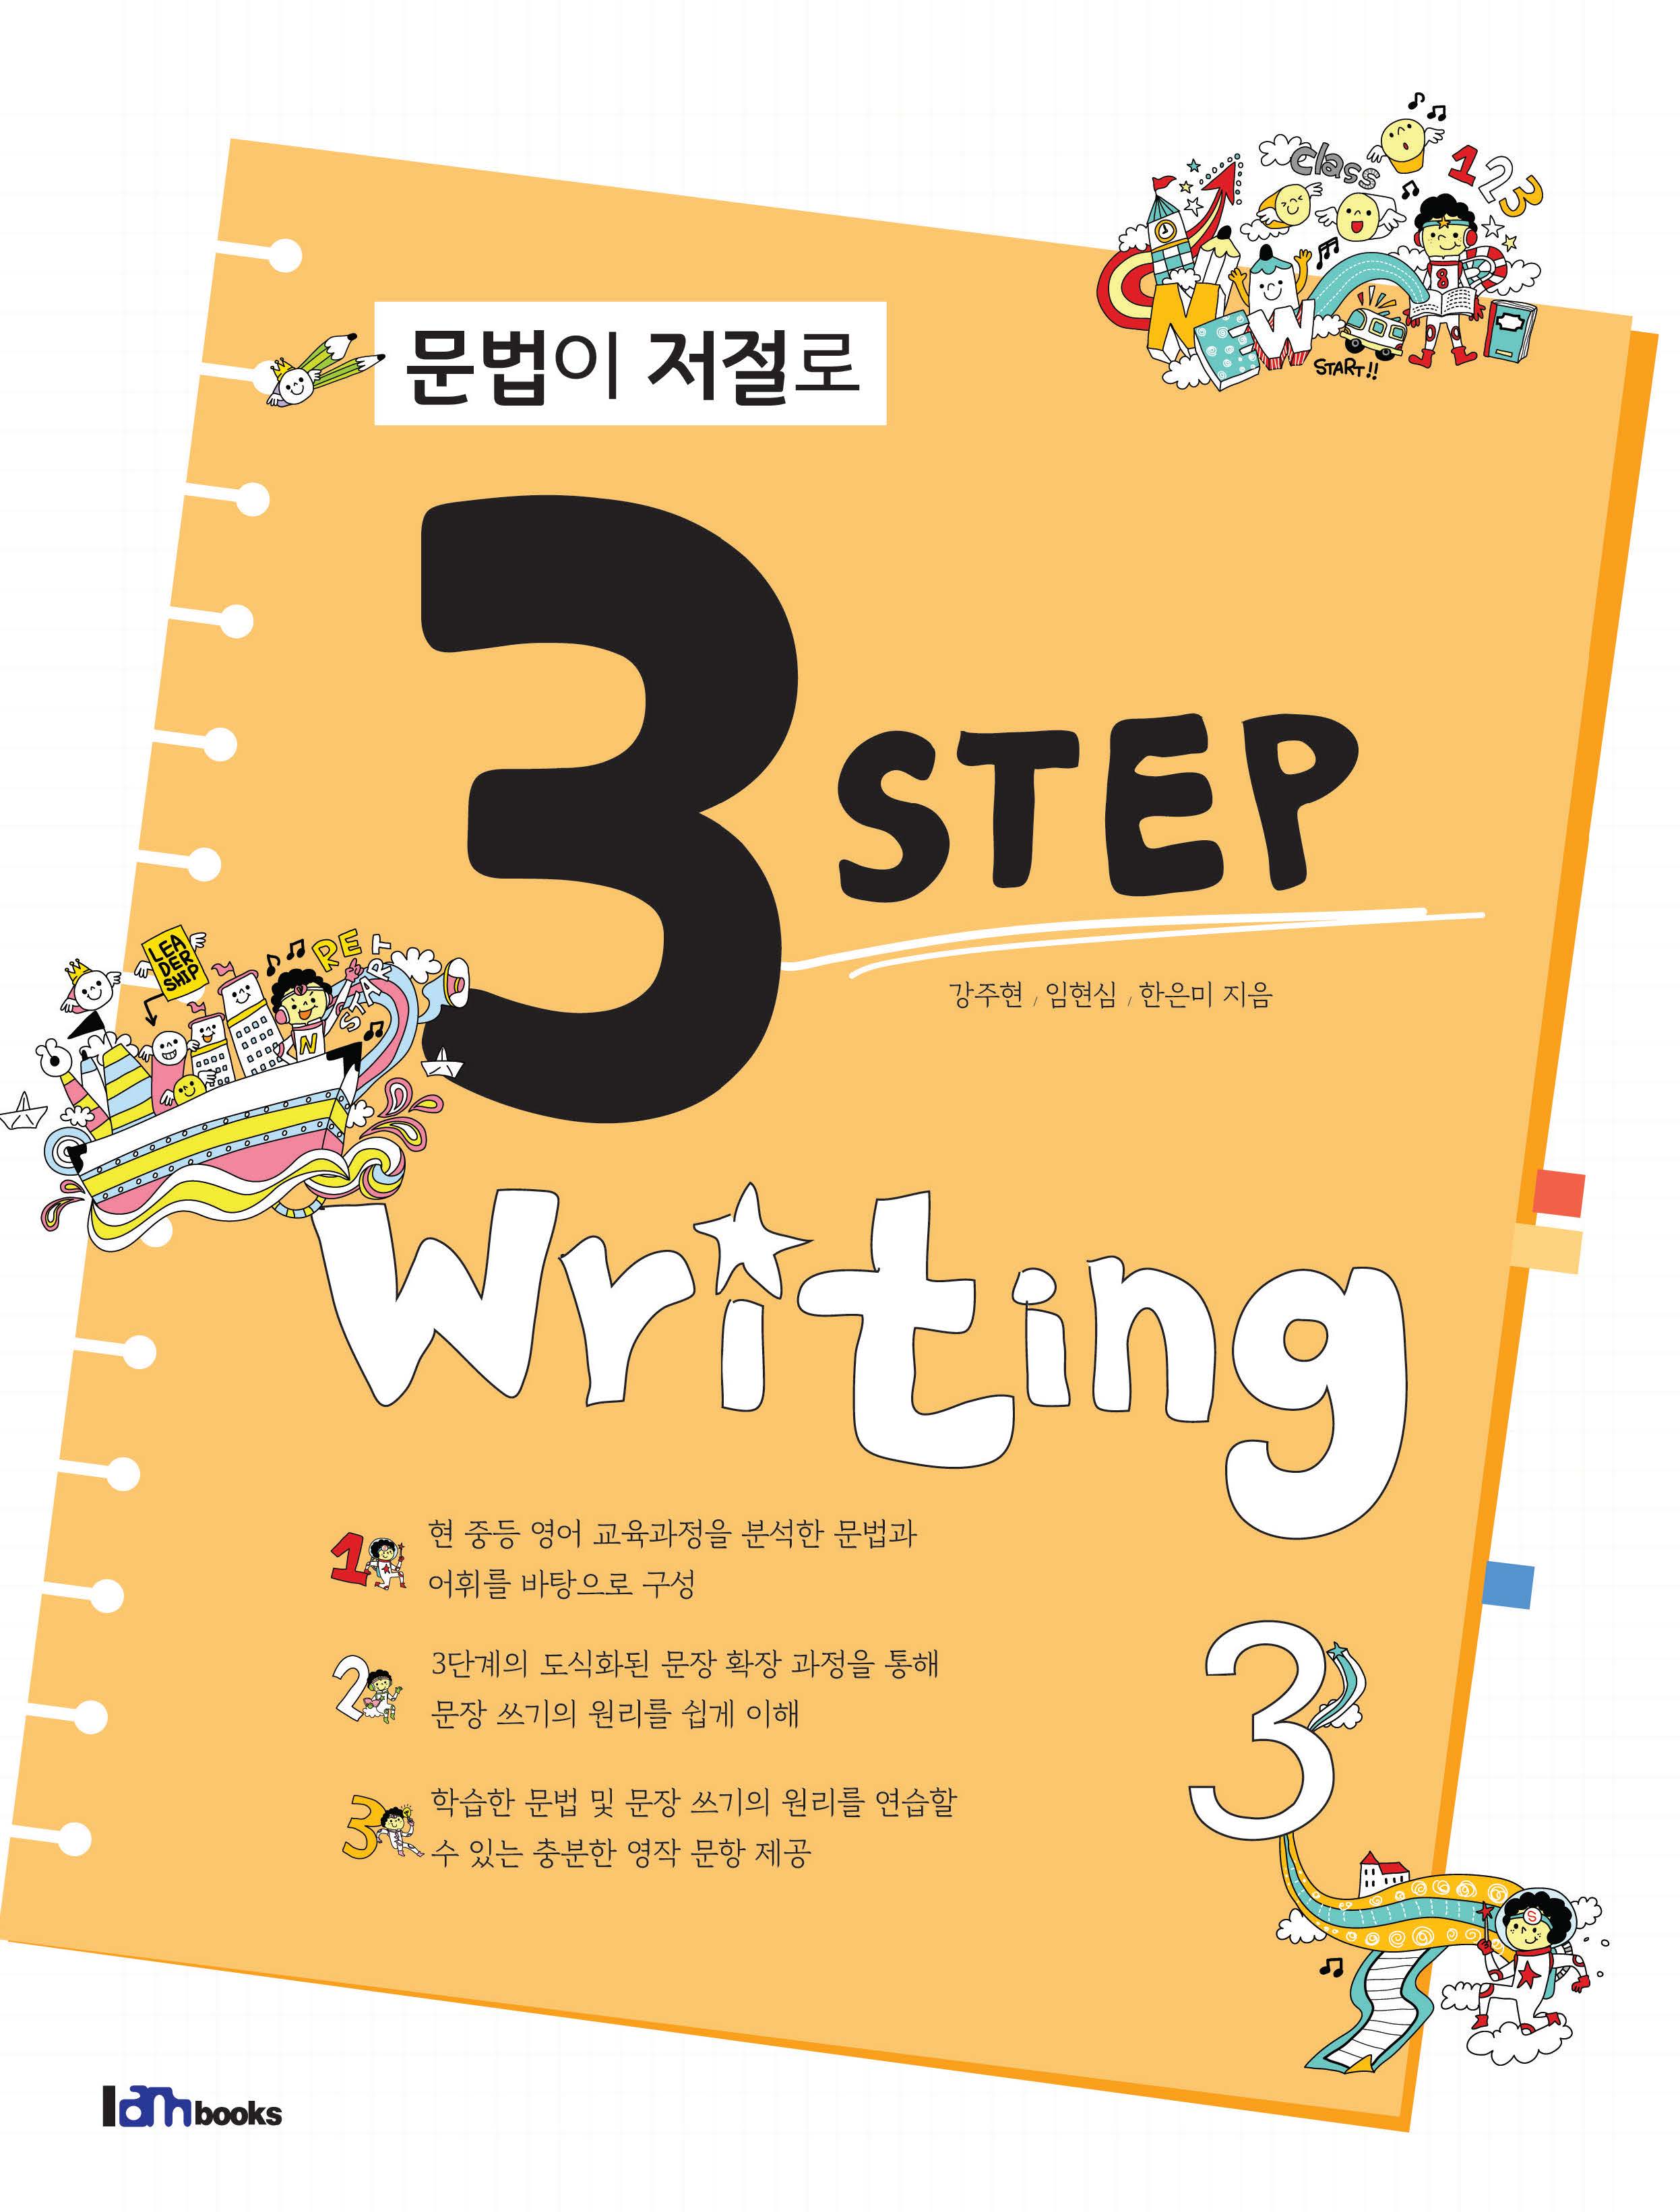 문법이 저절로 3 Step Writing 3